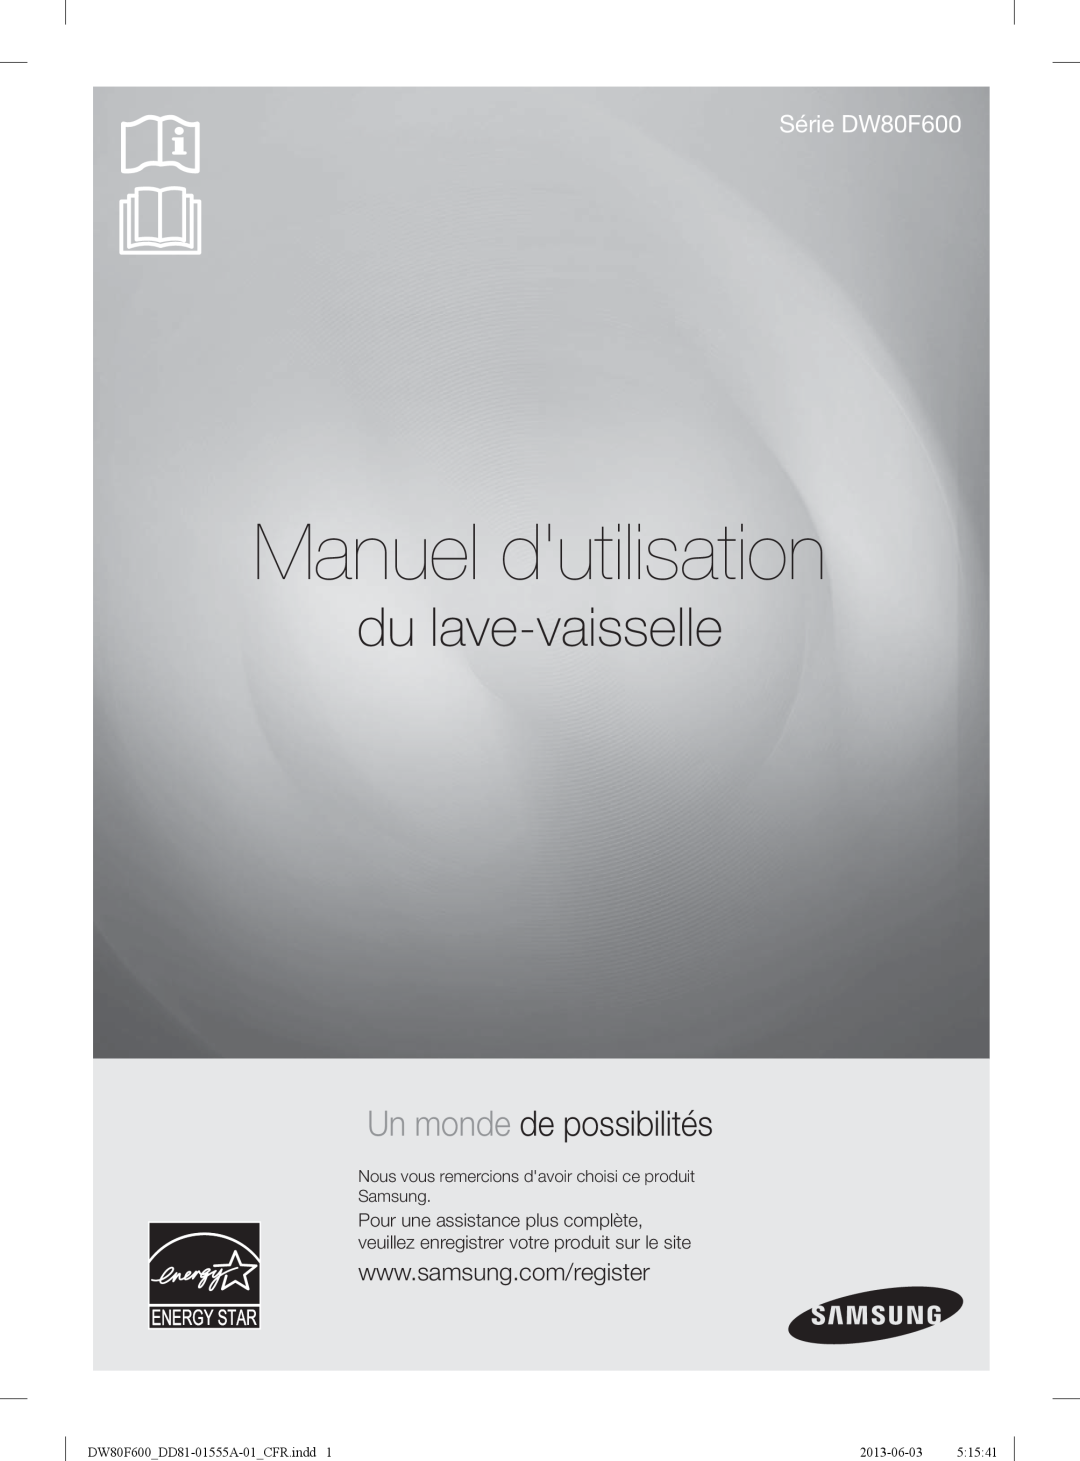 Samsung DW80F600UTS Manuel dutilisation, du lave-vaisselle, Un monde de possibilités, Série DW80F600, 2013-06-03 